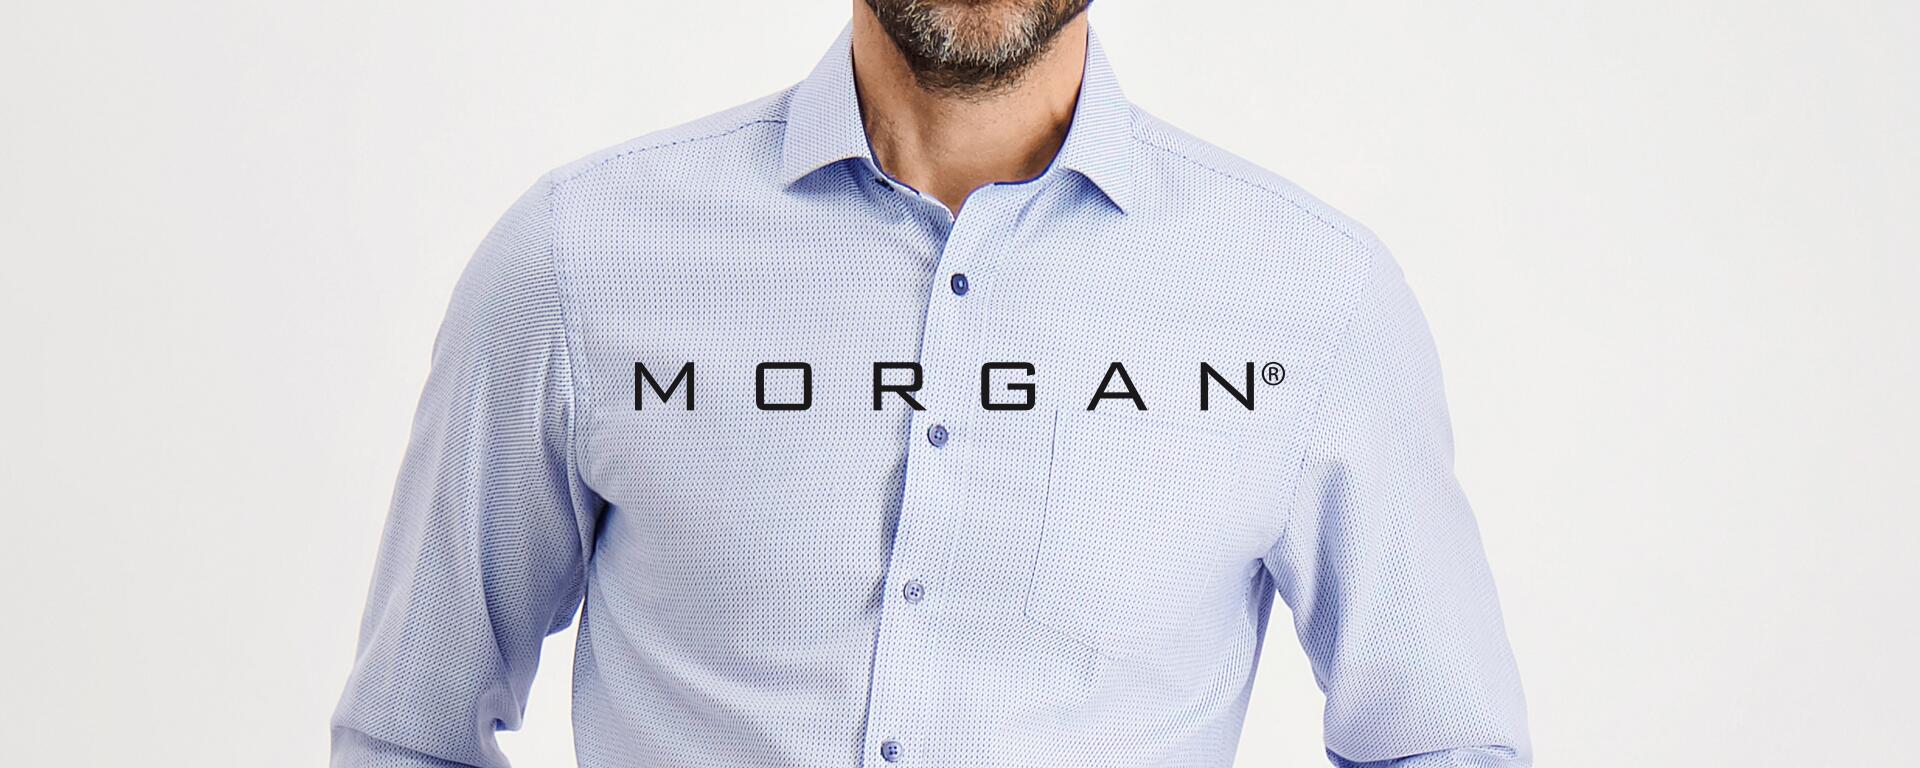 Morgan hos Tøjeksperten